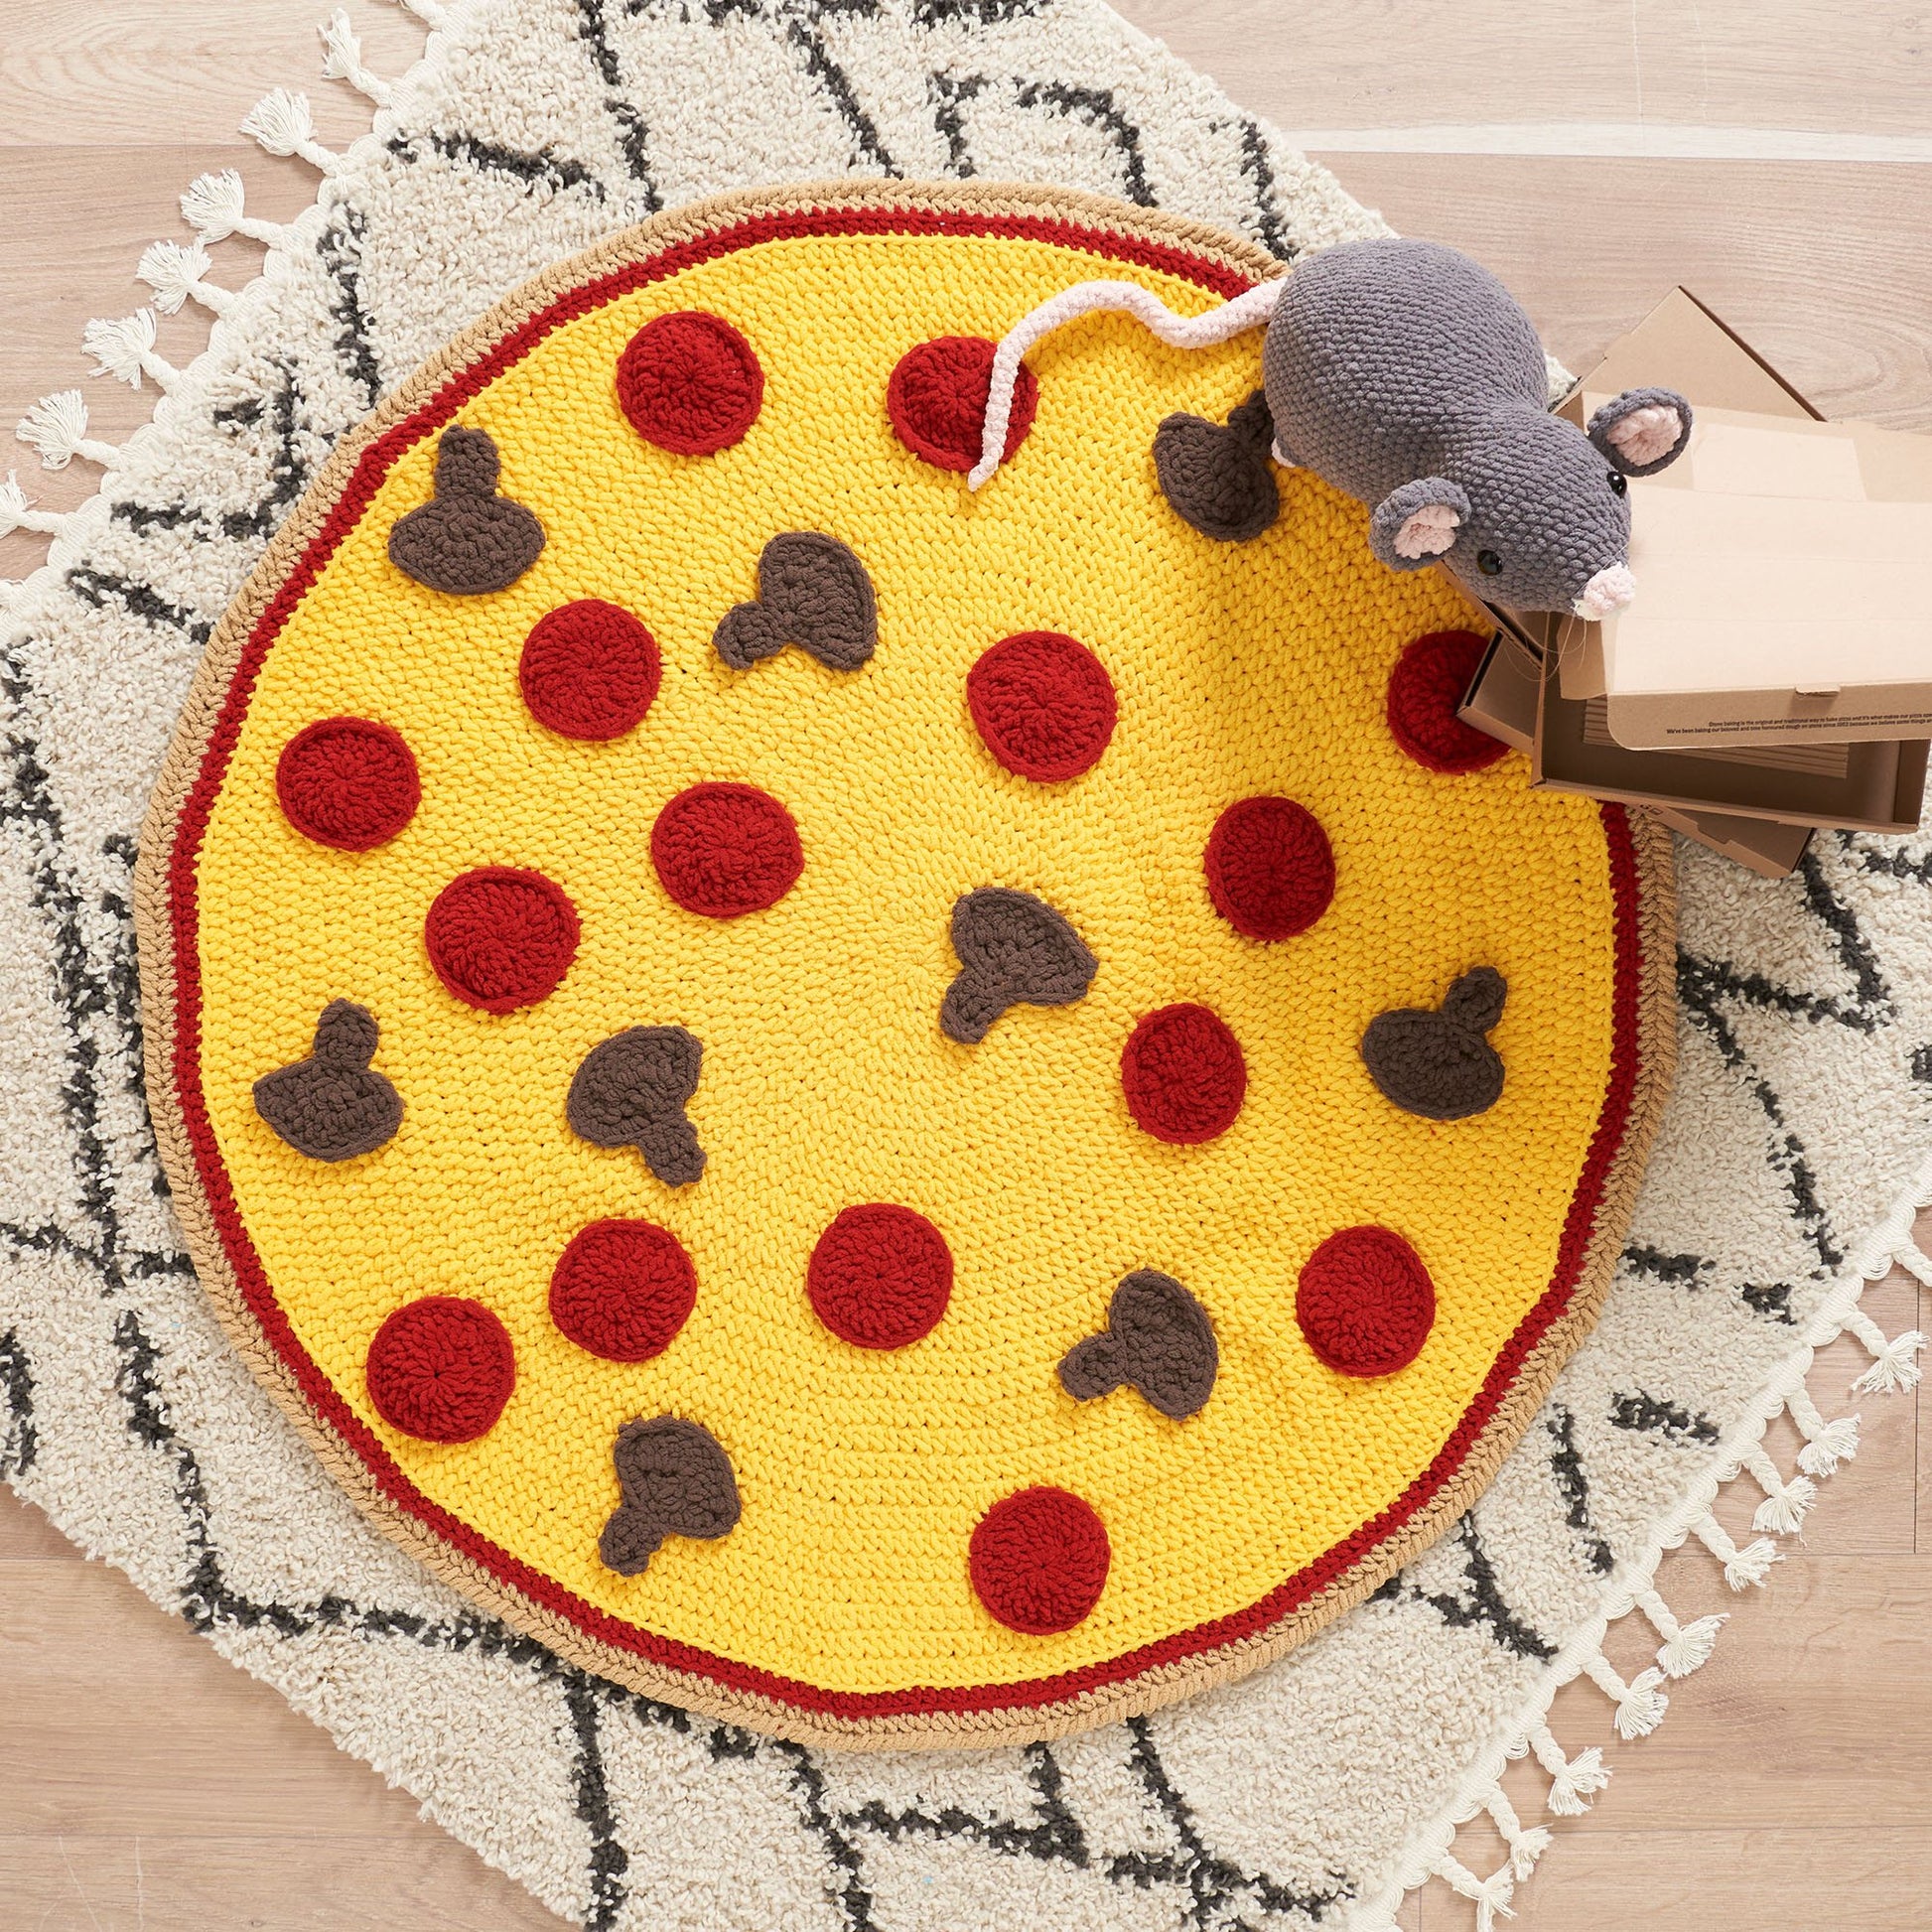 Free Bernat Crochet Pizza Blanket Pattern